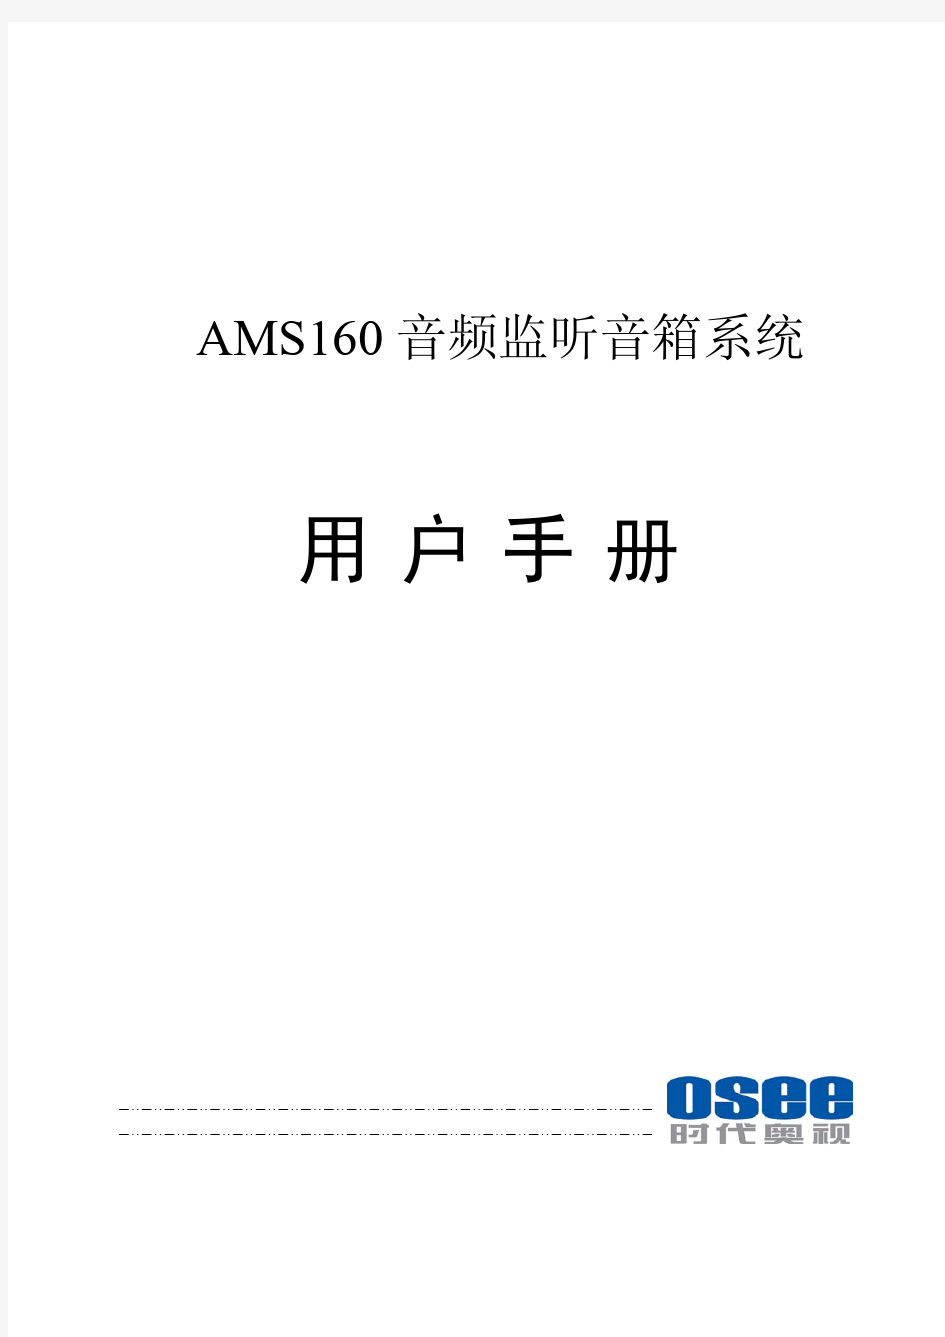 AMS160 音频监听音箱系统 用户手册